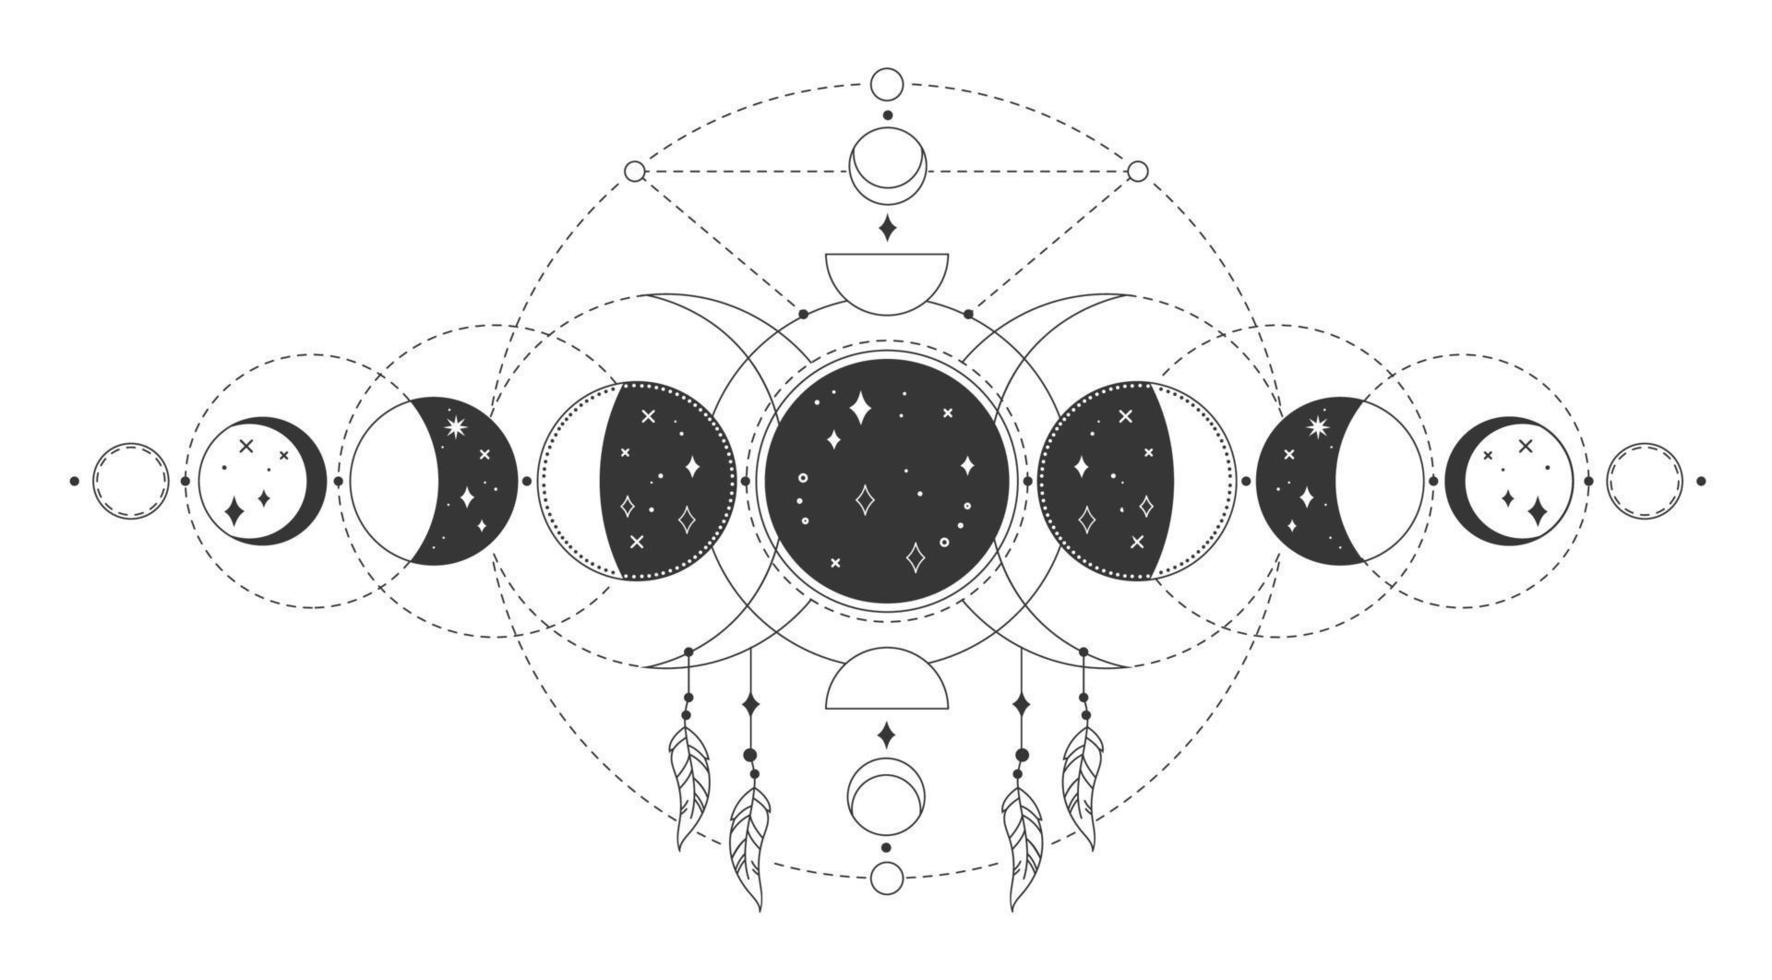 magi måne faser, mystisk helig lunar fas. ockult astrologi tatuering teckning med esoterisk geometrisk element vektor illustration